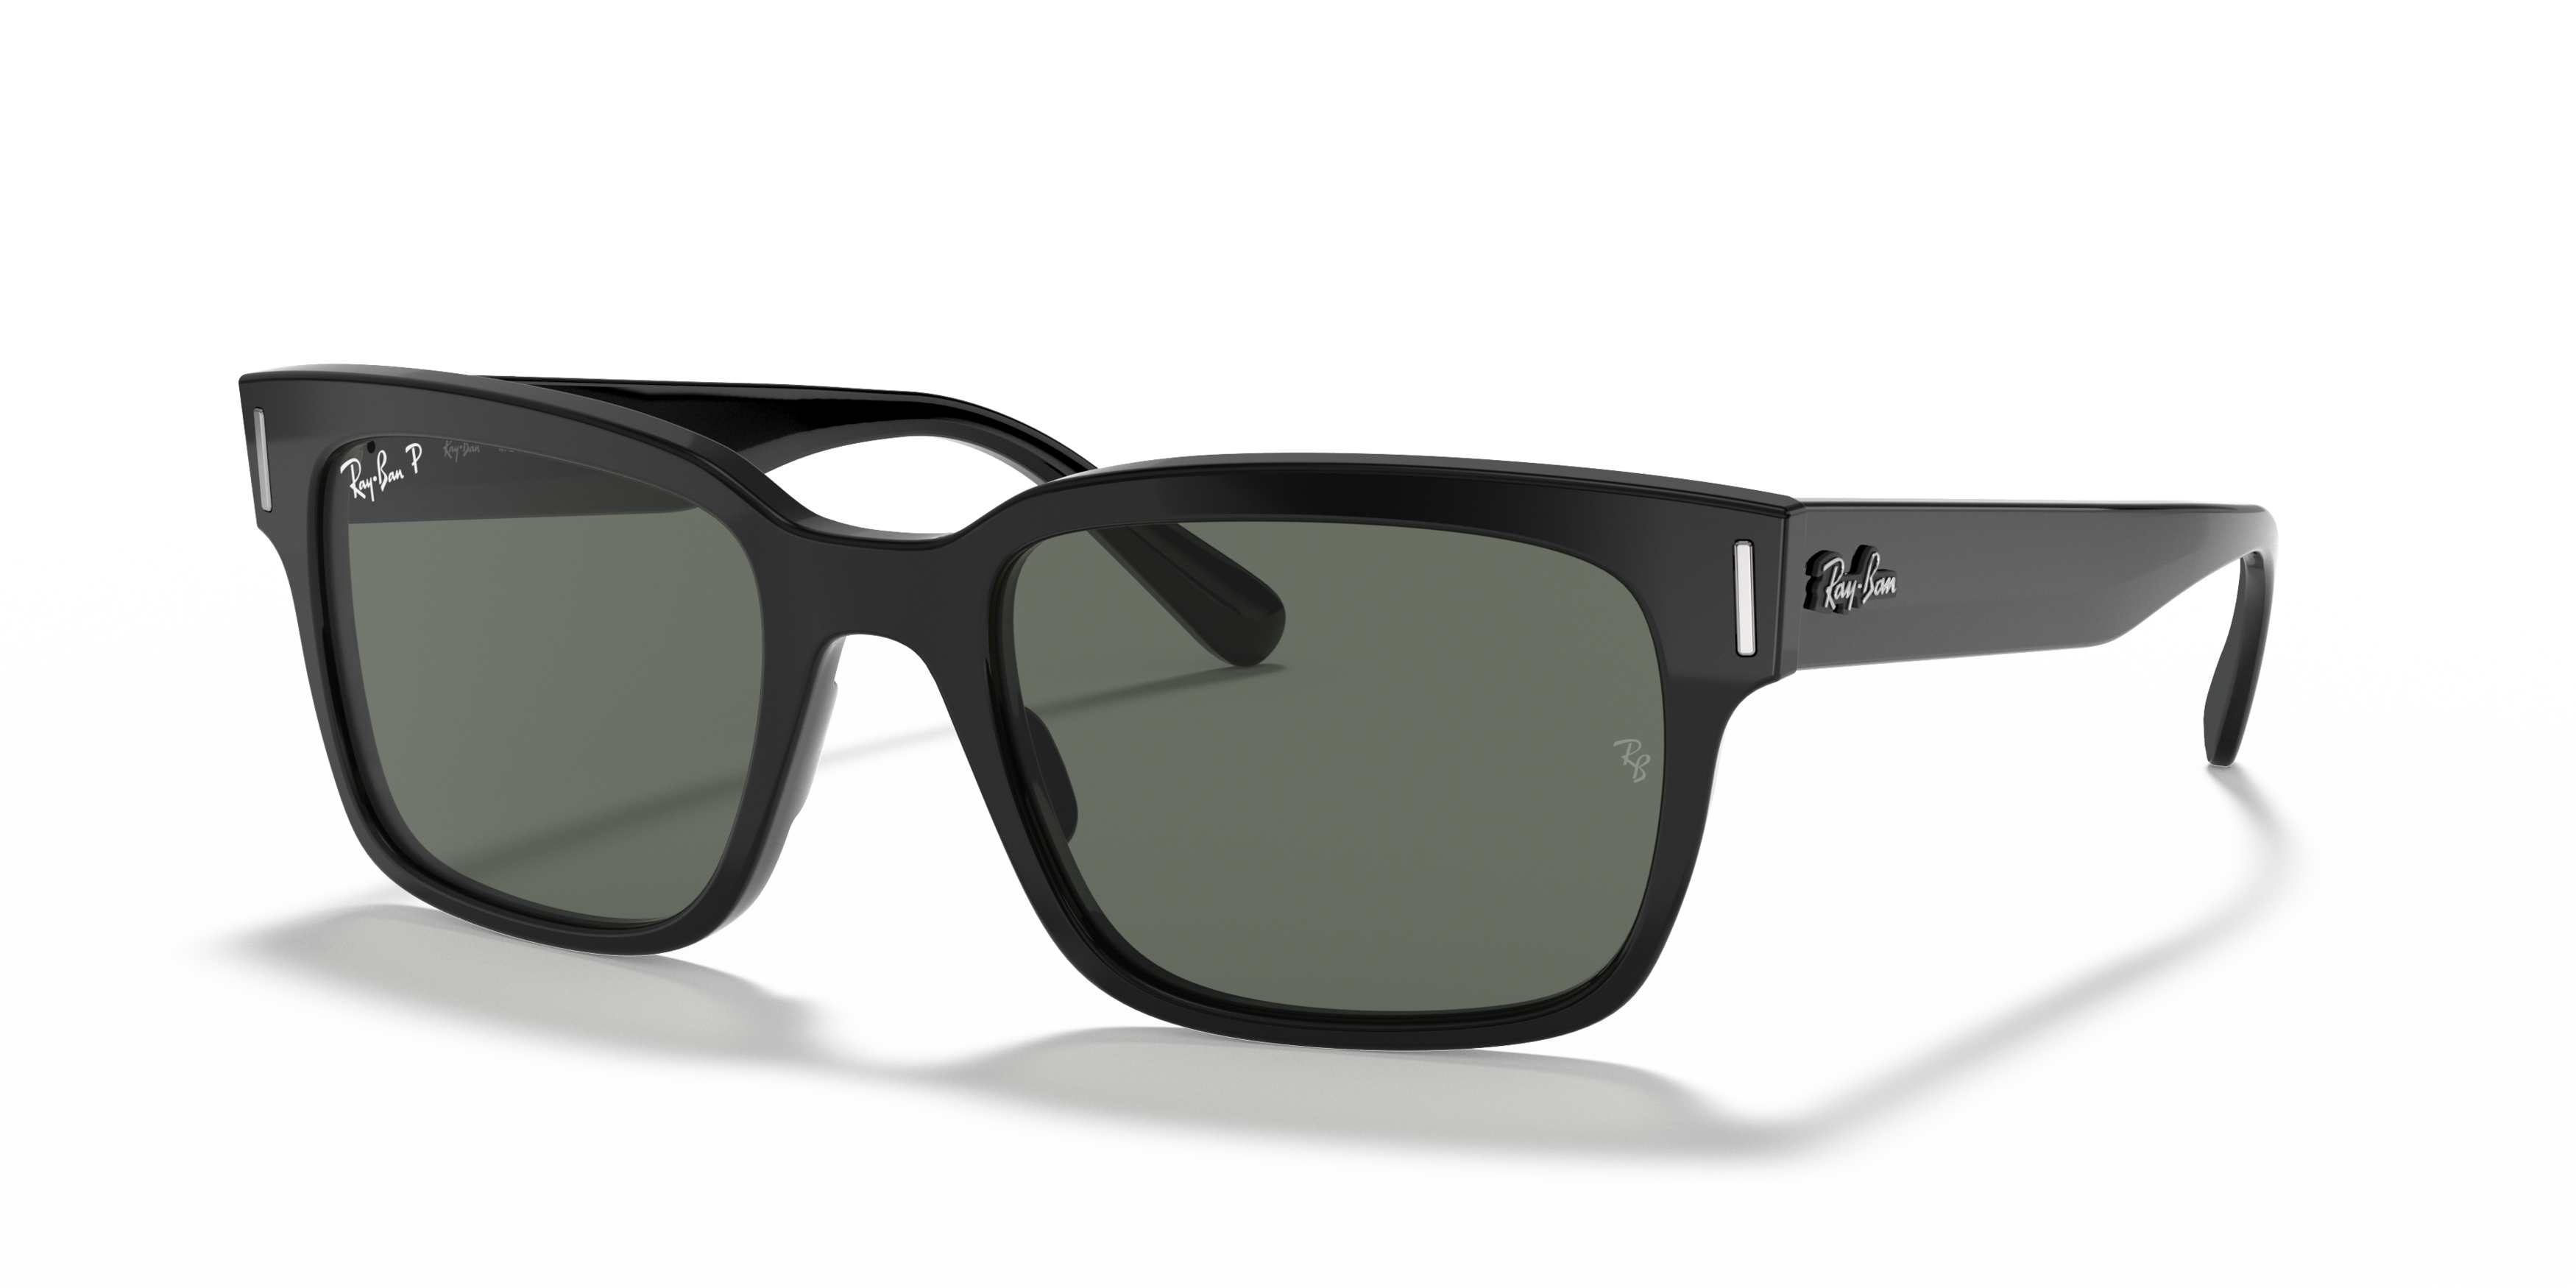 Angle_Left01 Ray-Ban RB 2190 Sunglasses Green / Black